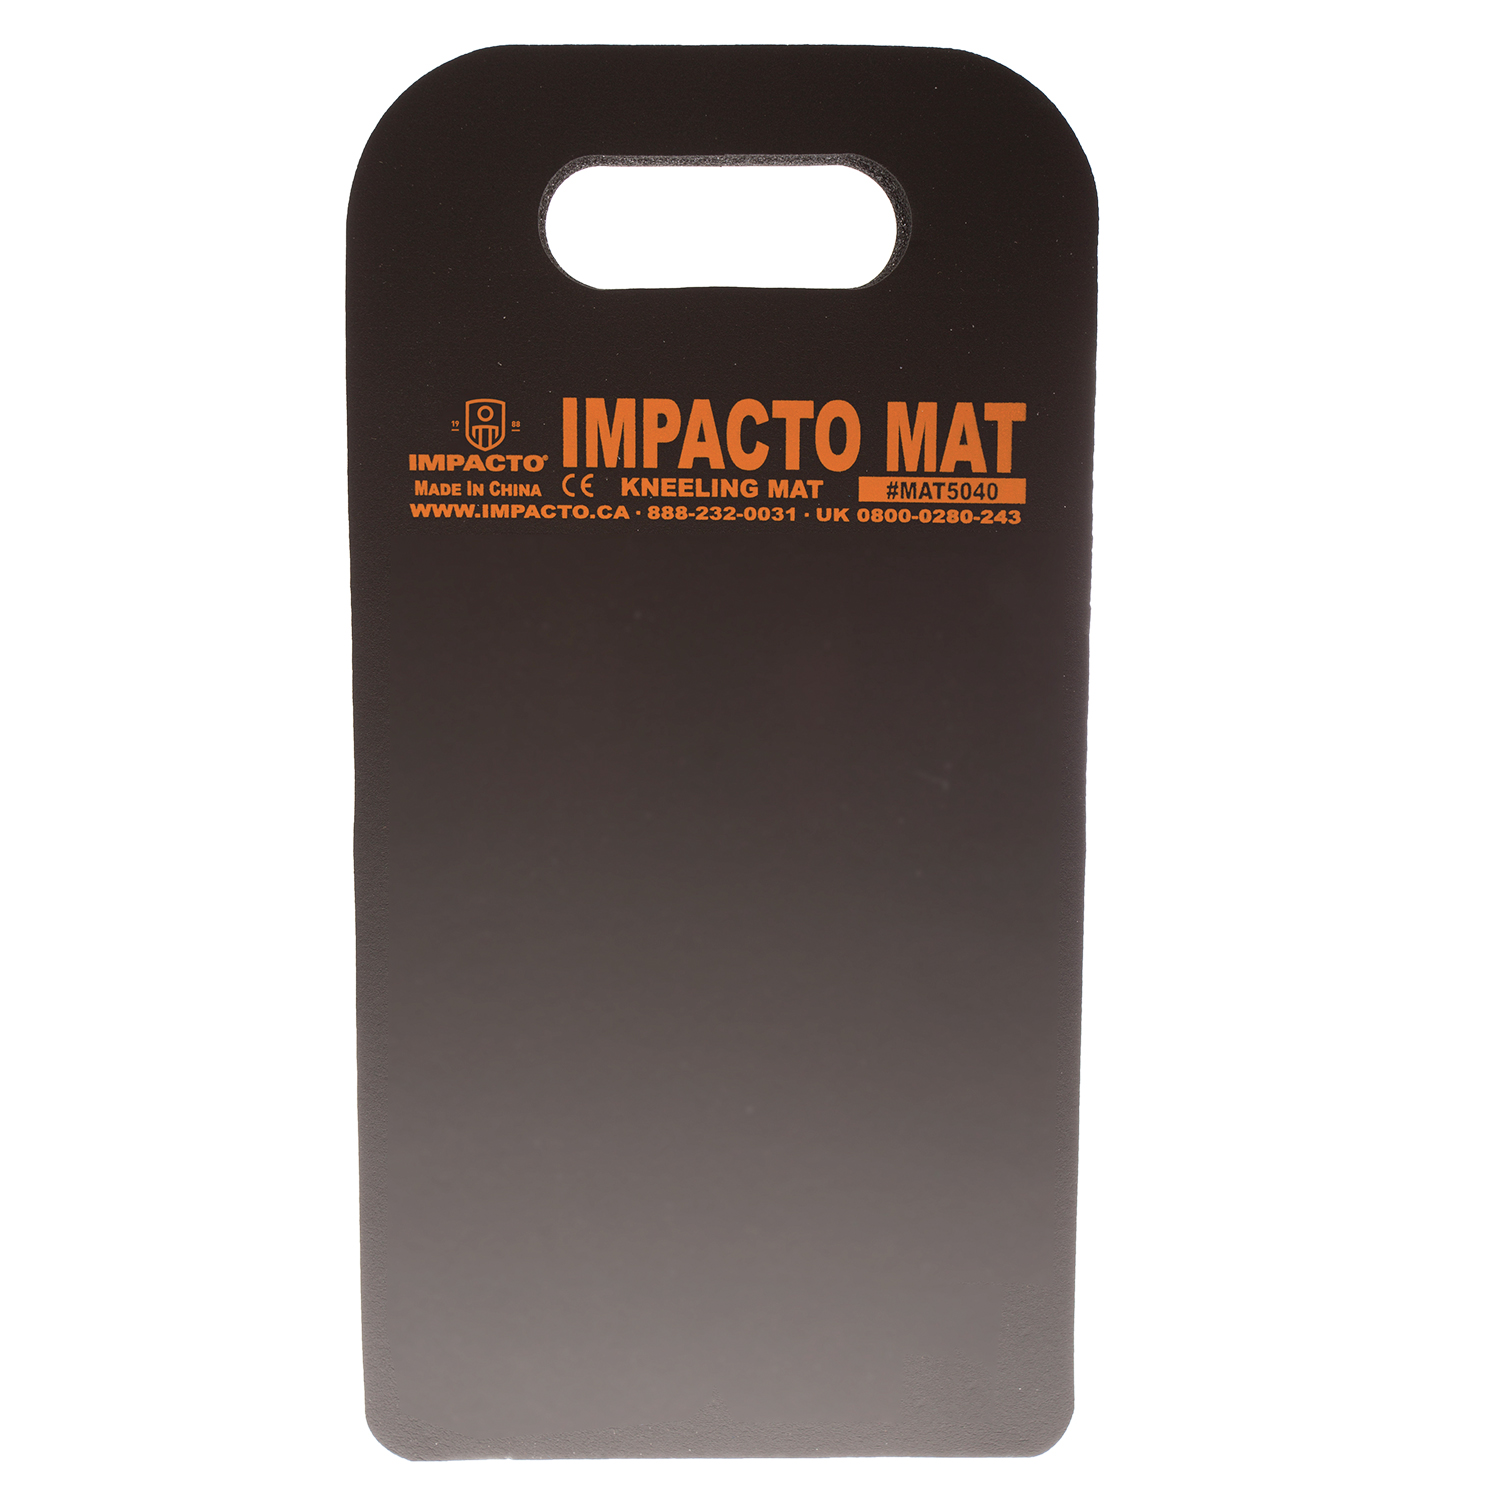 Impacto MAT5040 8 x 16-inch Handy Kneeling Mat 